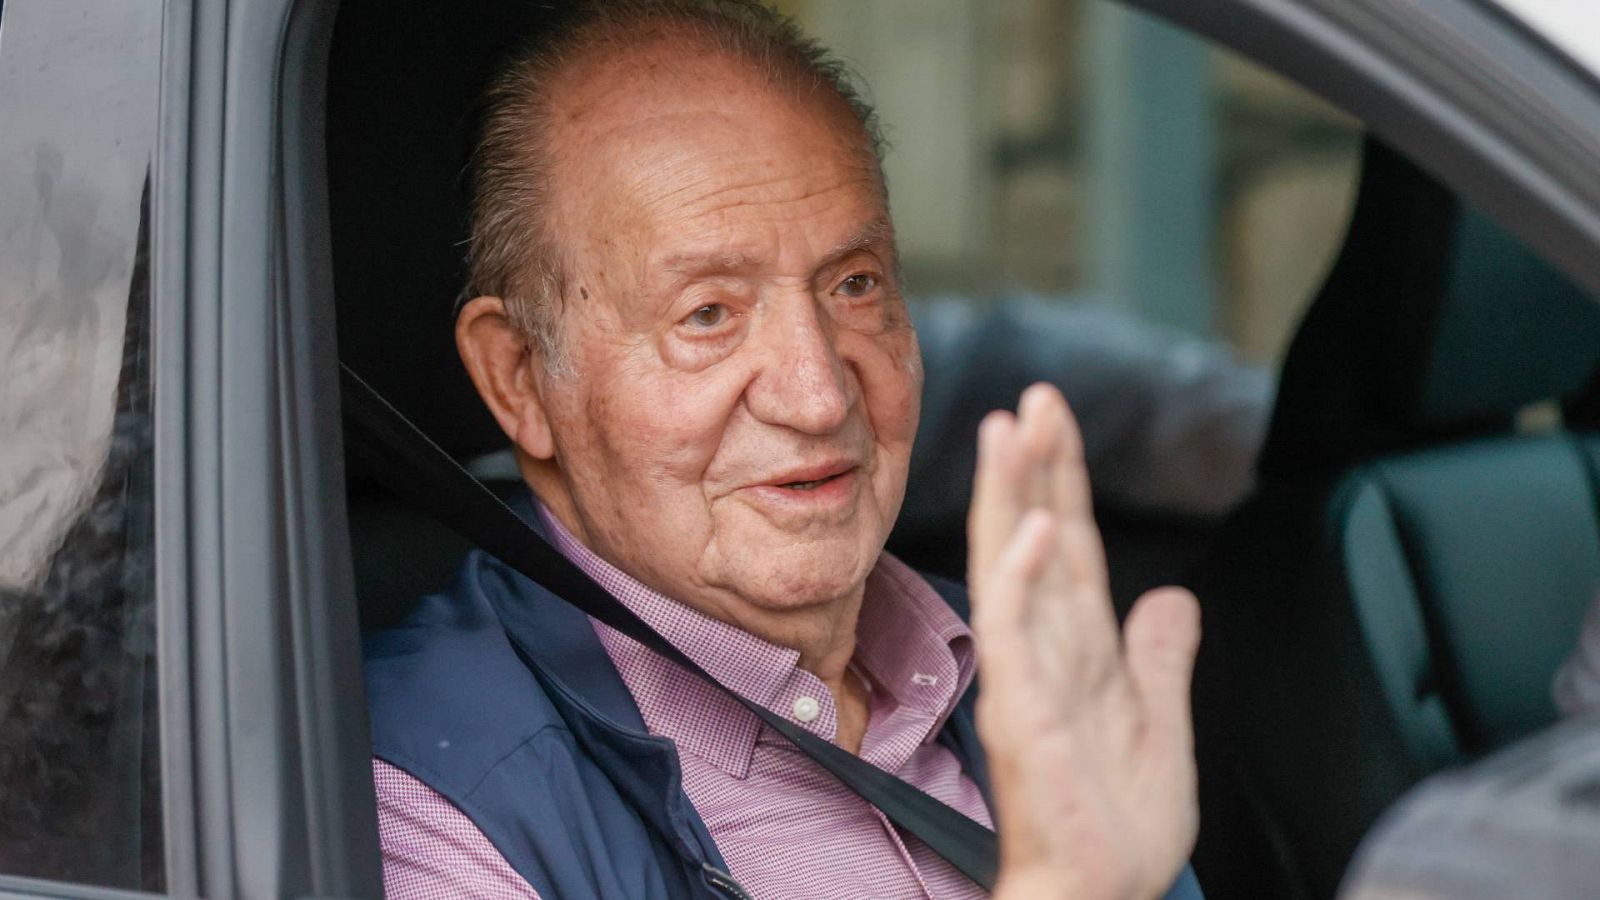 El rey Juan Carlos se despide de los periodistas a la salida de la casa de su amigo, Pedro Campos, tras pasar una semana navegando en la regata que lleva su nombre en Sanxenxo, Pontevedra